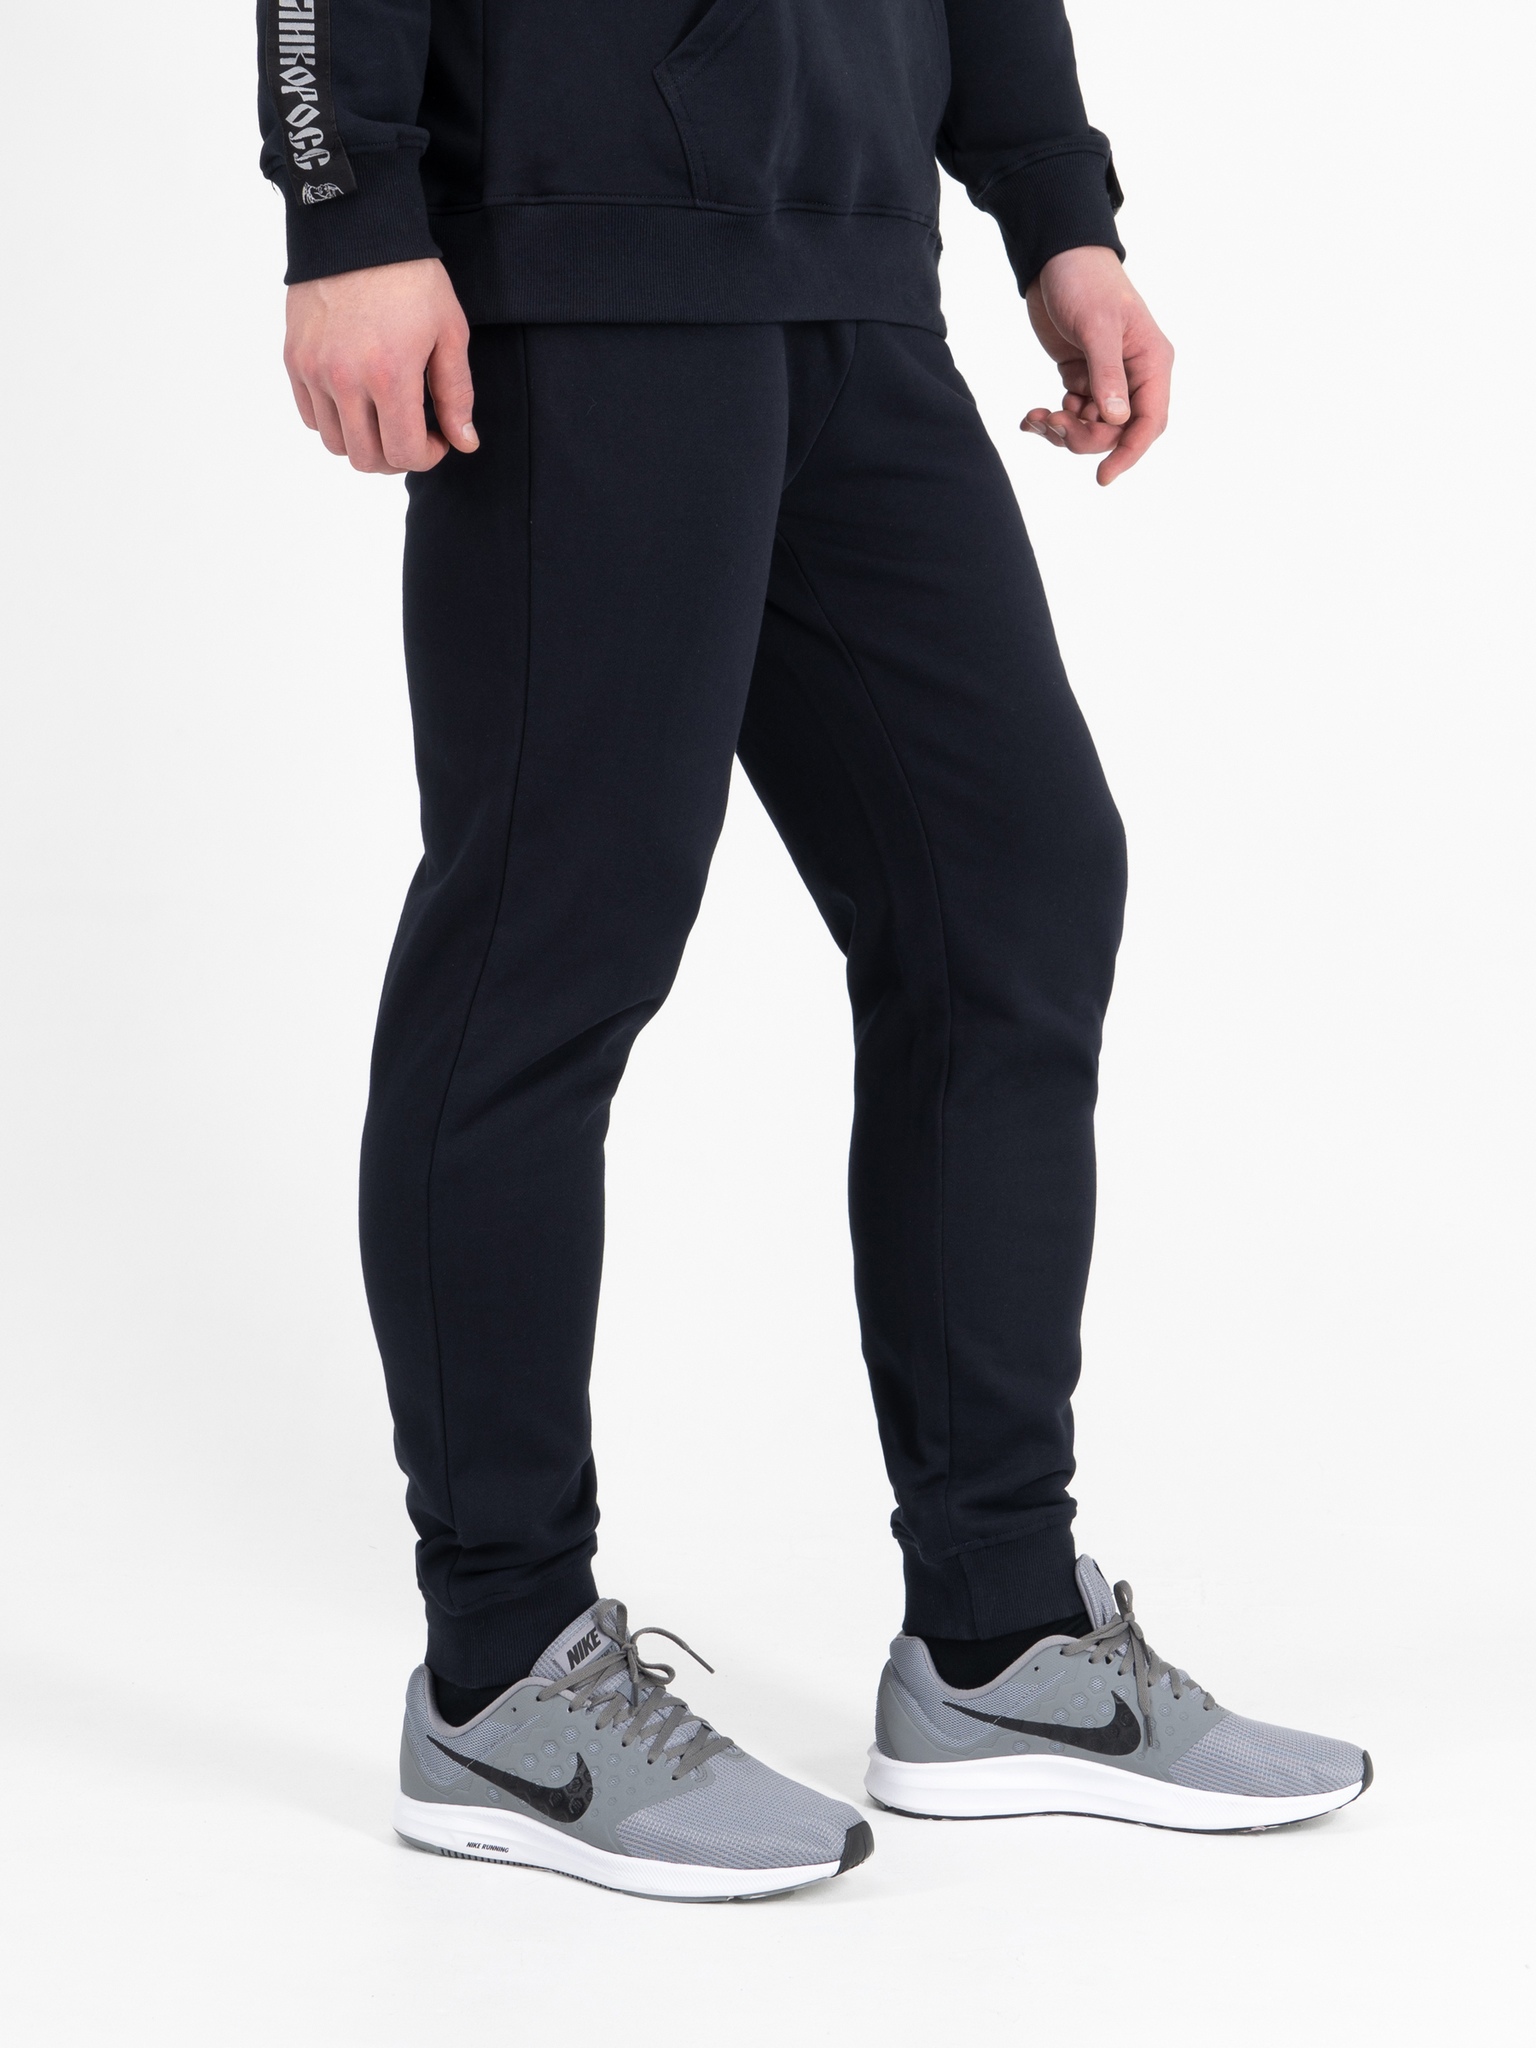 Спортивные брюки мужские Великоросс BM синие 48 RU